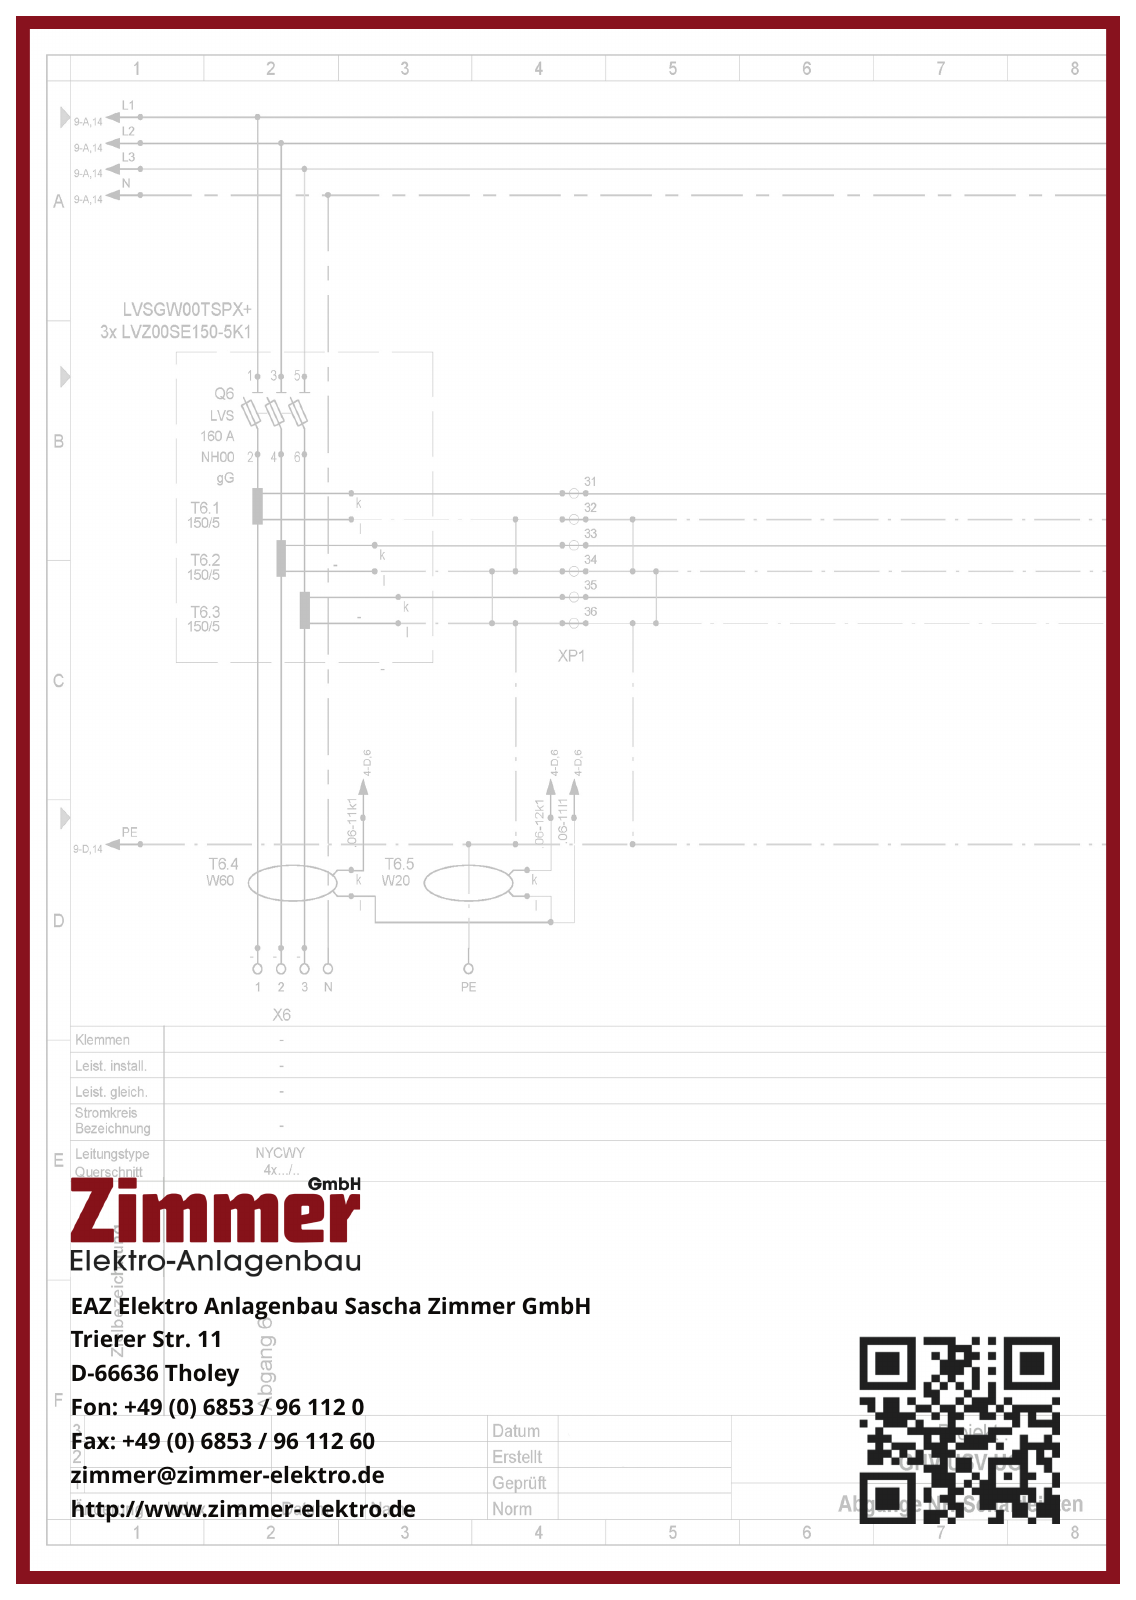 Vorschau EAZ Elektro Anlagenbau Sascha Zimmer GmbH - Image - gross Seite 6